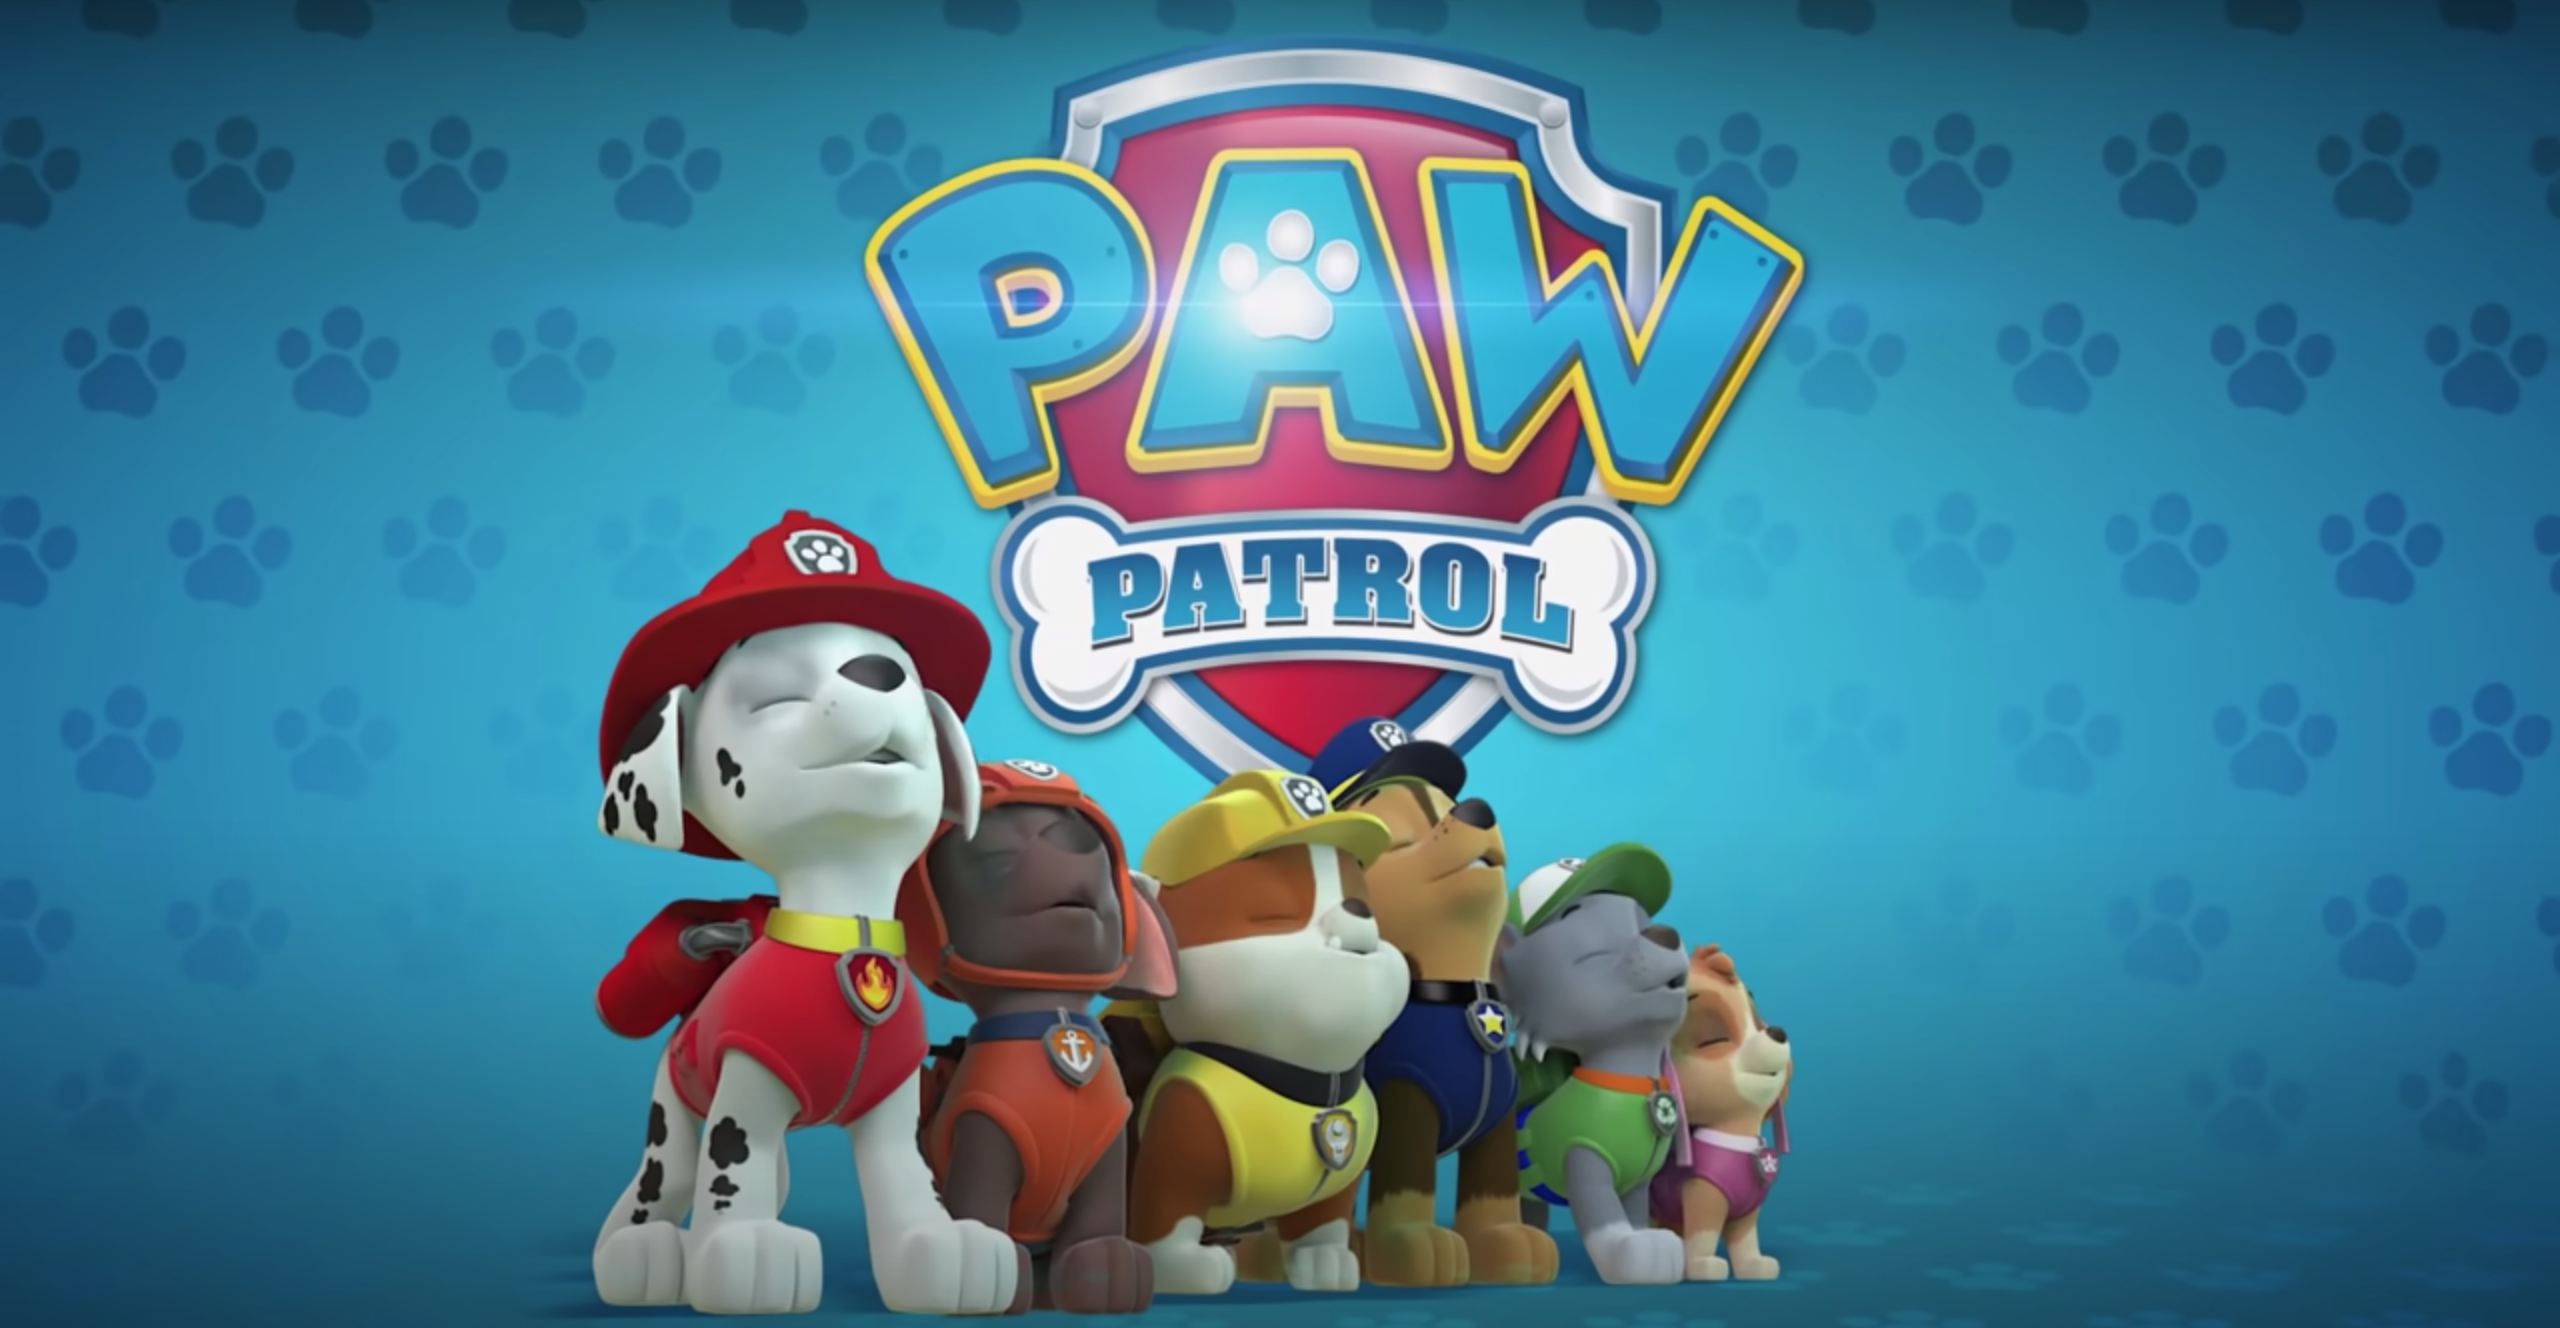 PAW Patrol